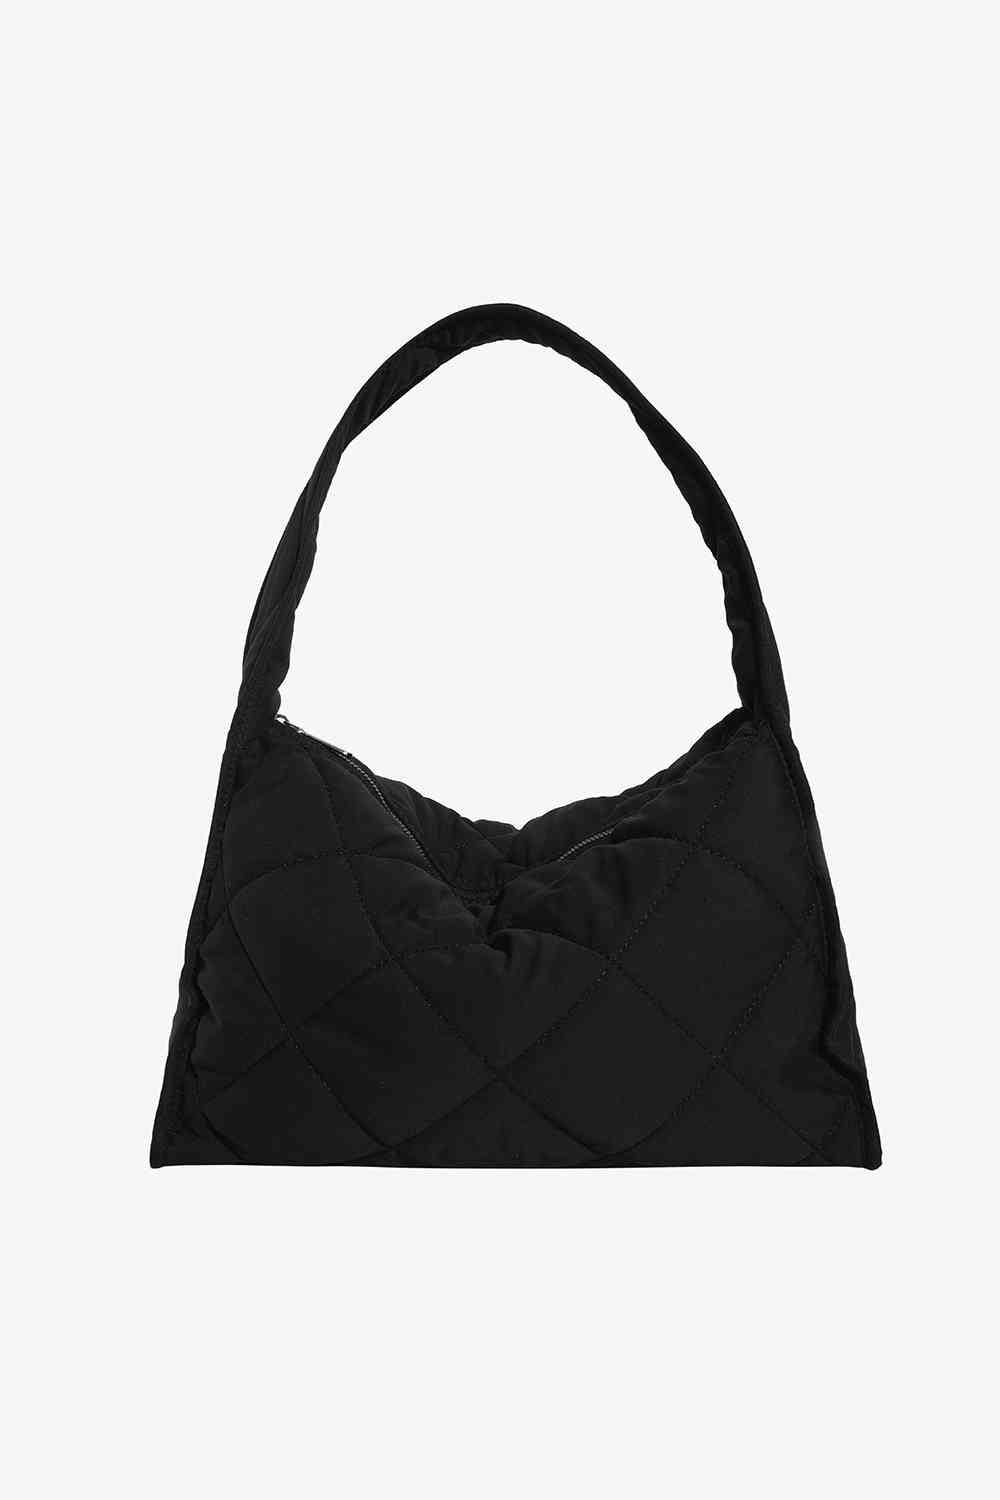 Nylon Shoulder Bag Black One Size